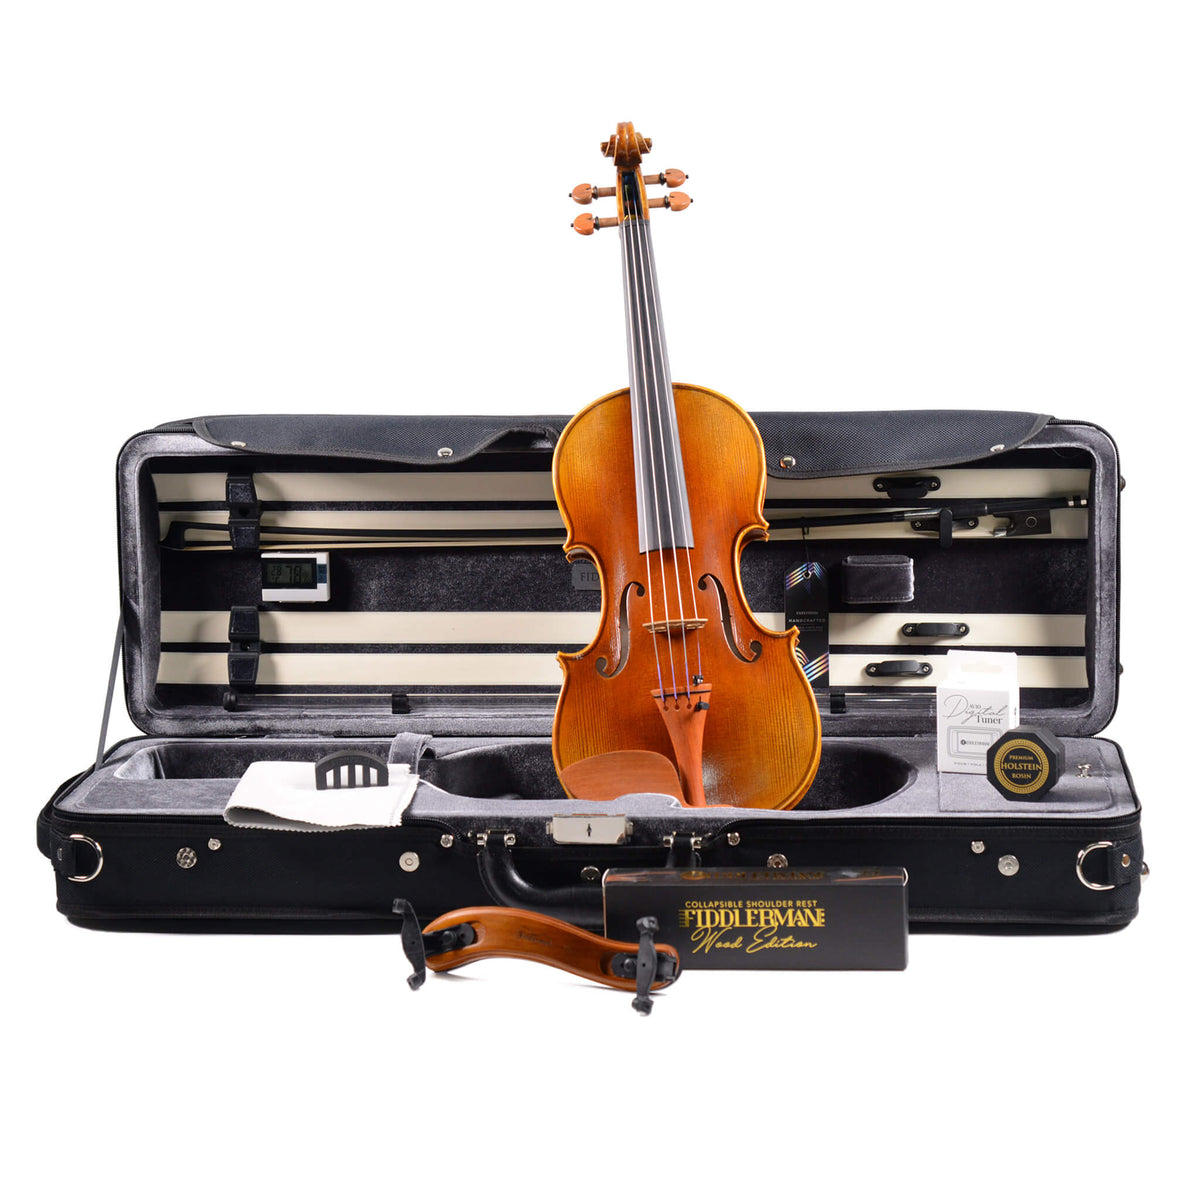 Fiddlerman Symphony Violin Outfit